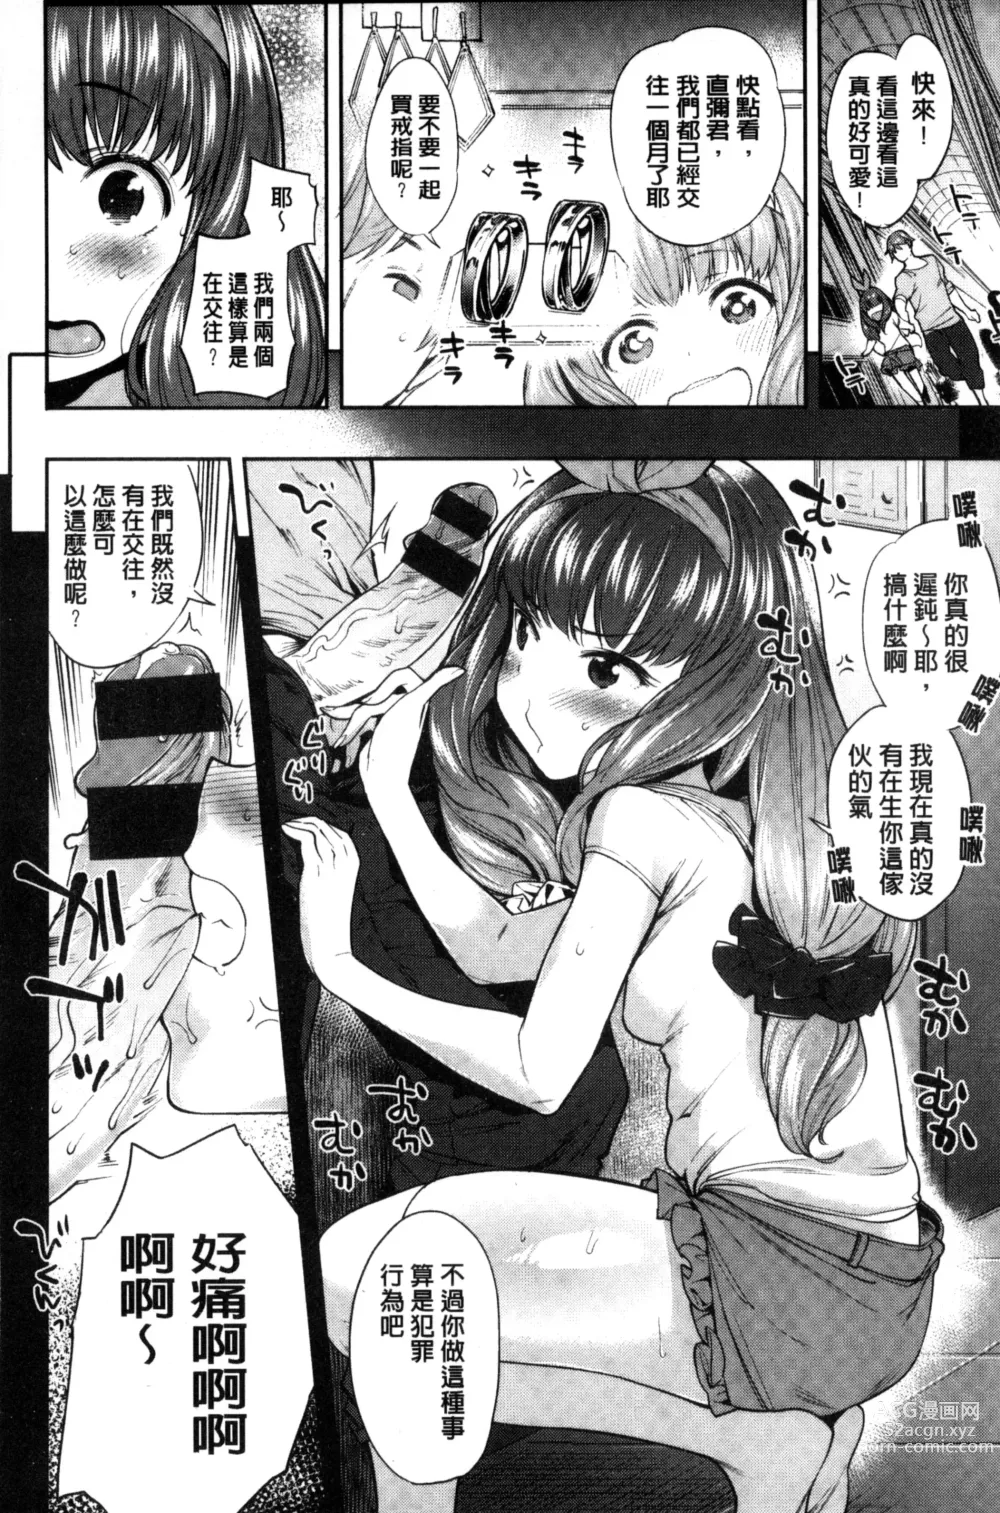 Page 210 of manga Zettai Muteki Shoujo - Cant beat me at sex!!